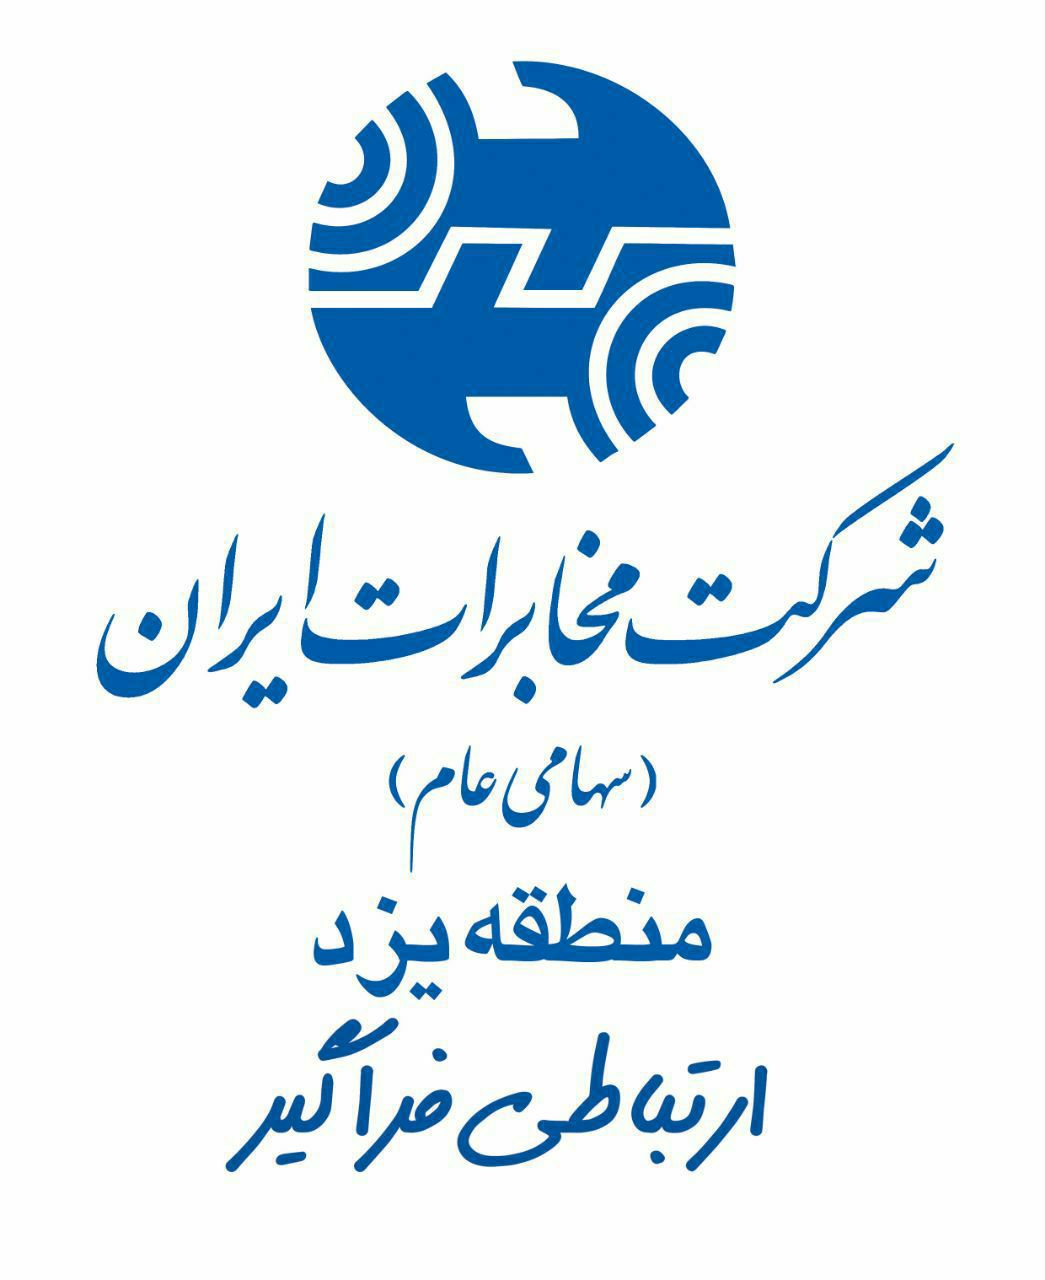 یزد رتبه سوم ضریب نفوذ تلفن ثابت کشور را دارد